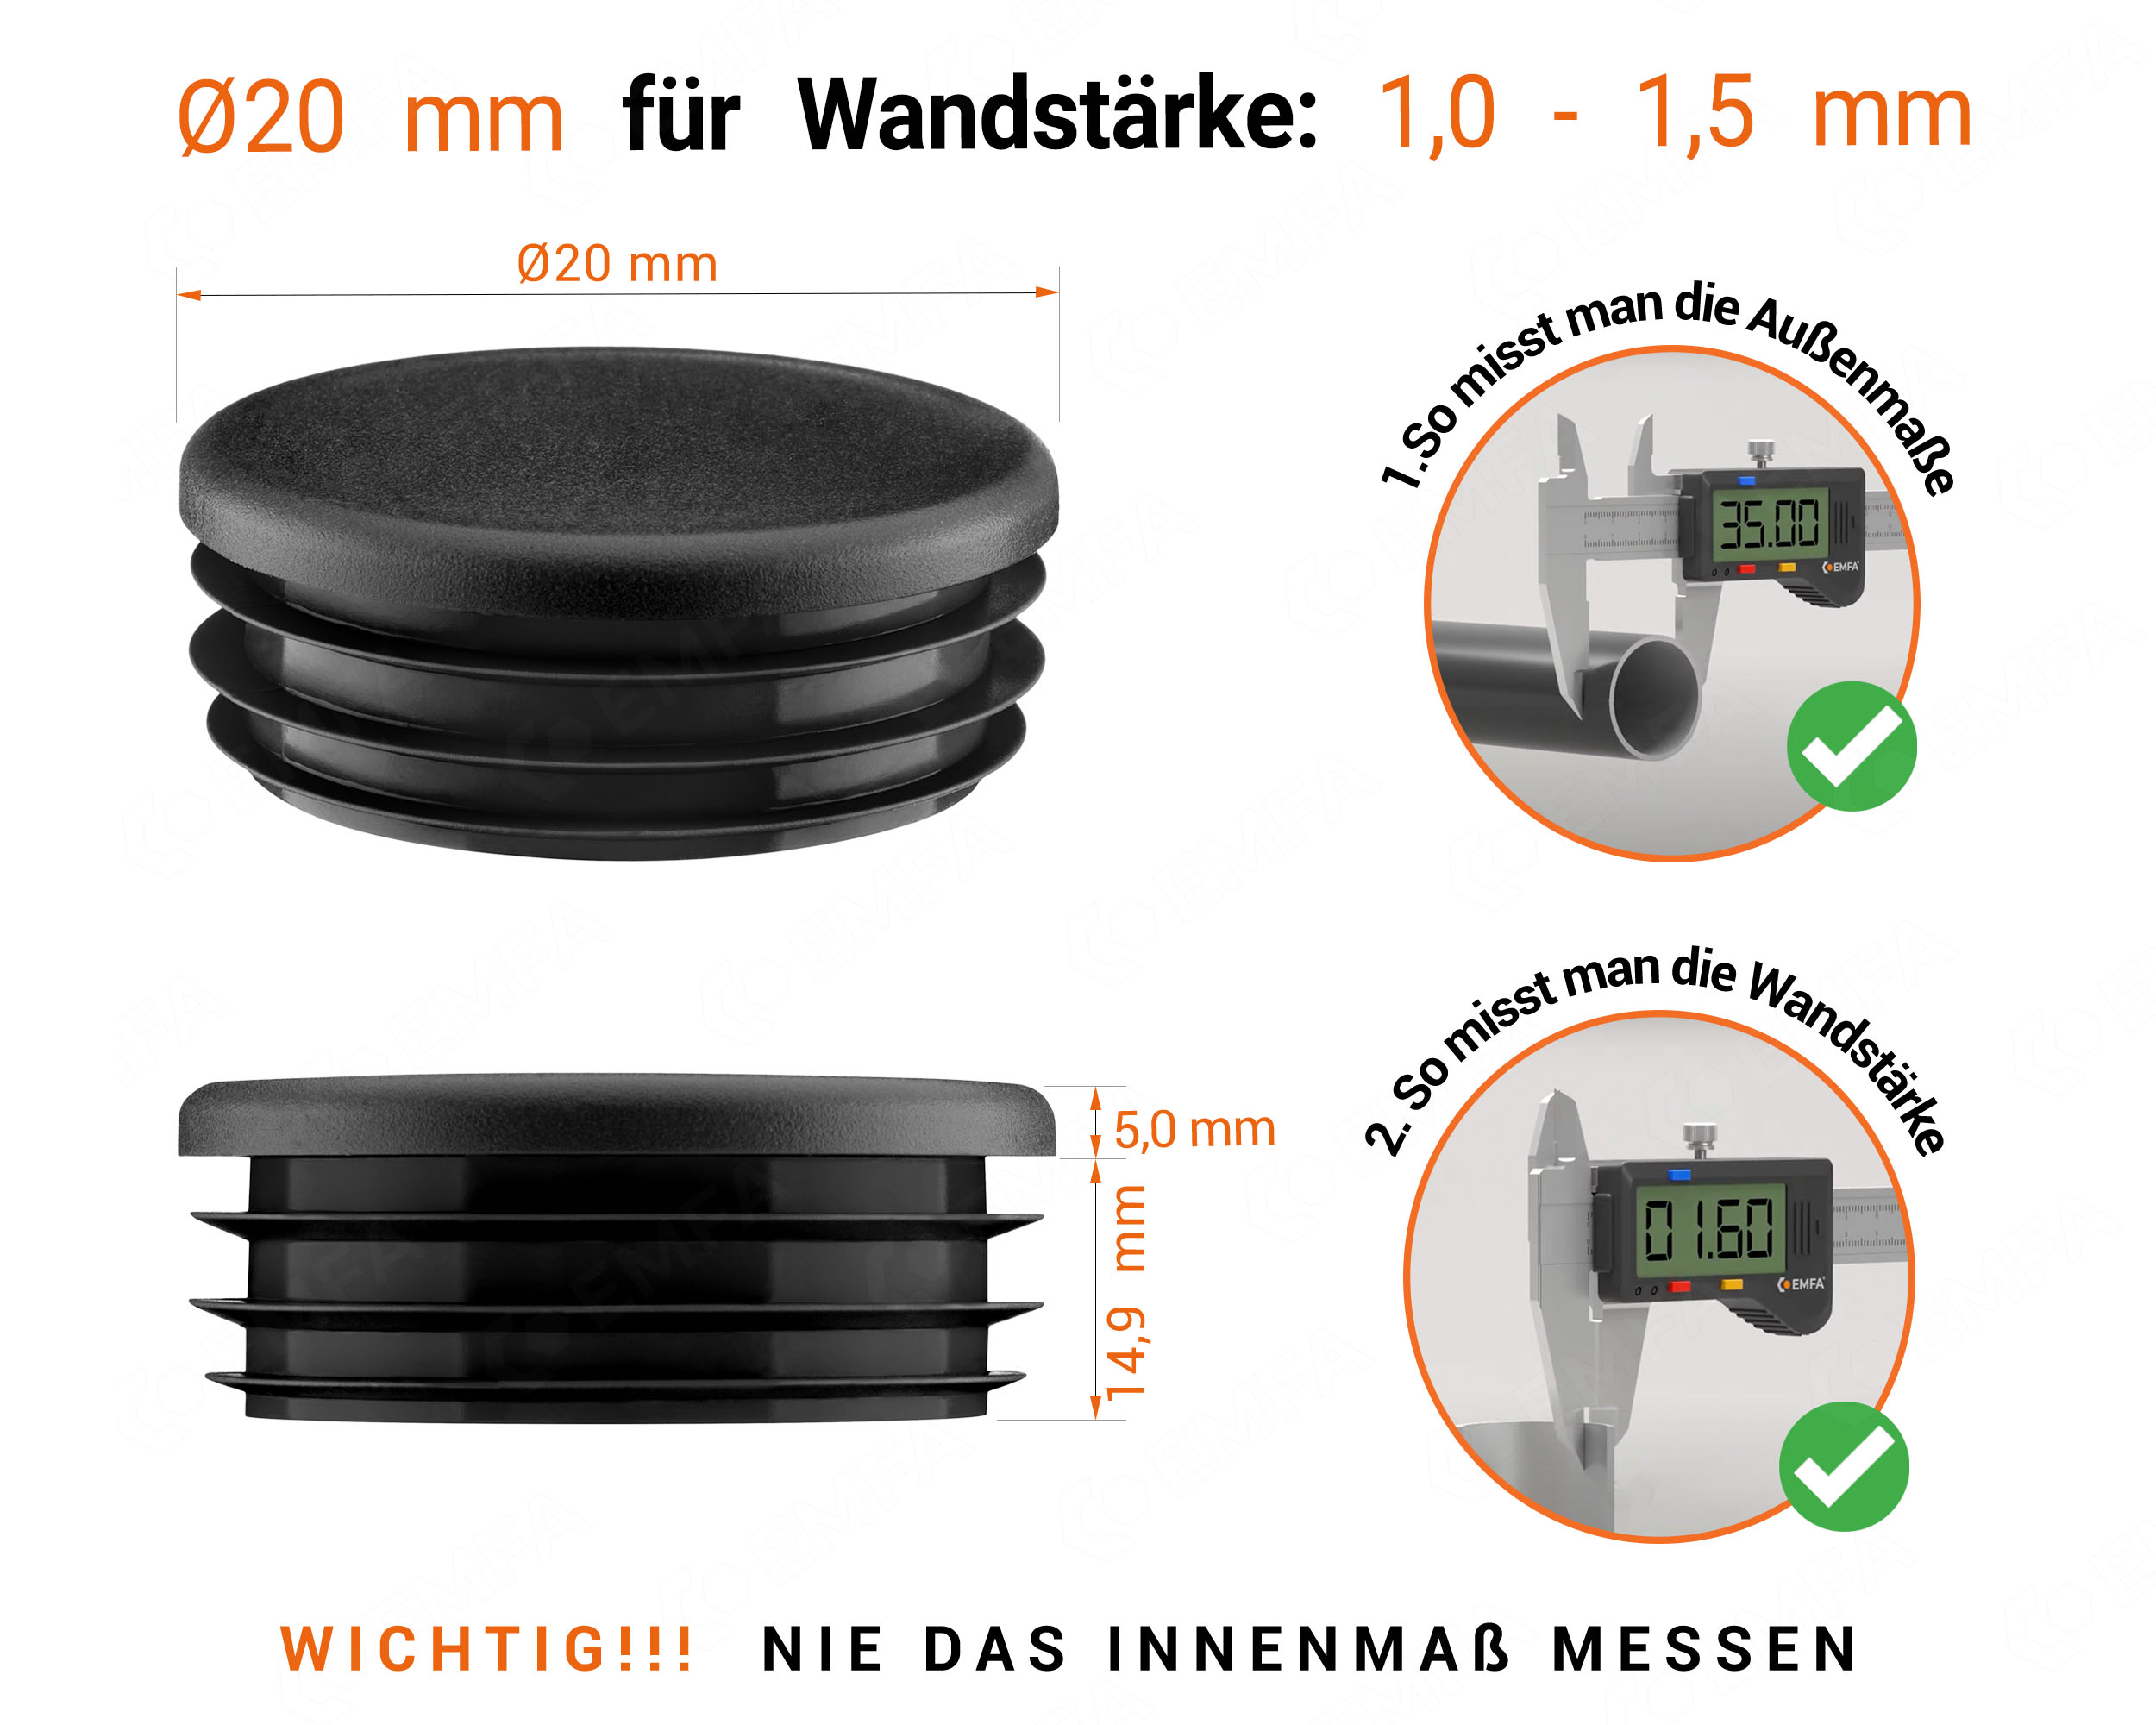 Schwarze Endkappe für Rundrohre in der Größe 20 mm mit technischen Abmessungen und Anleitung für korrekte Messung